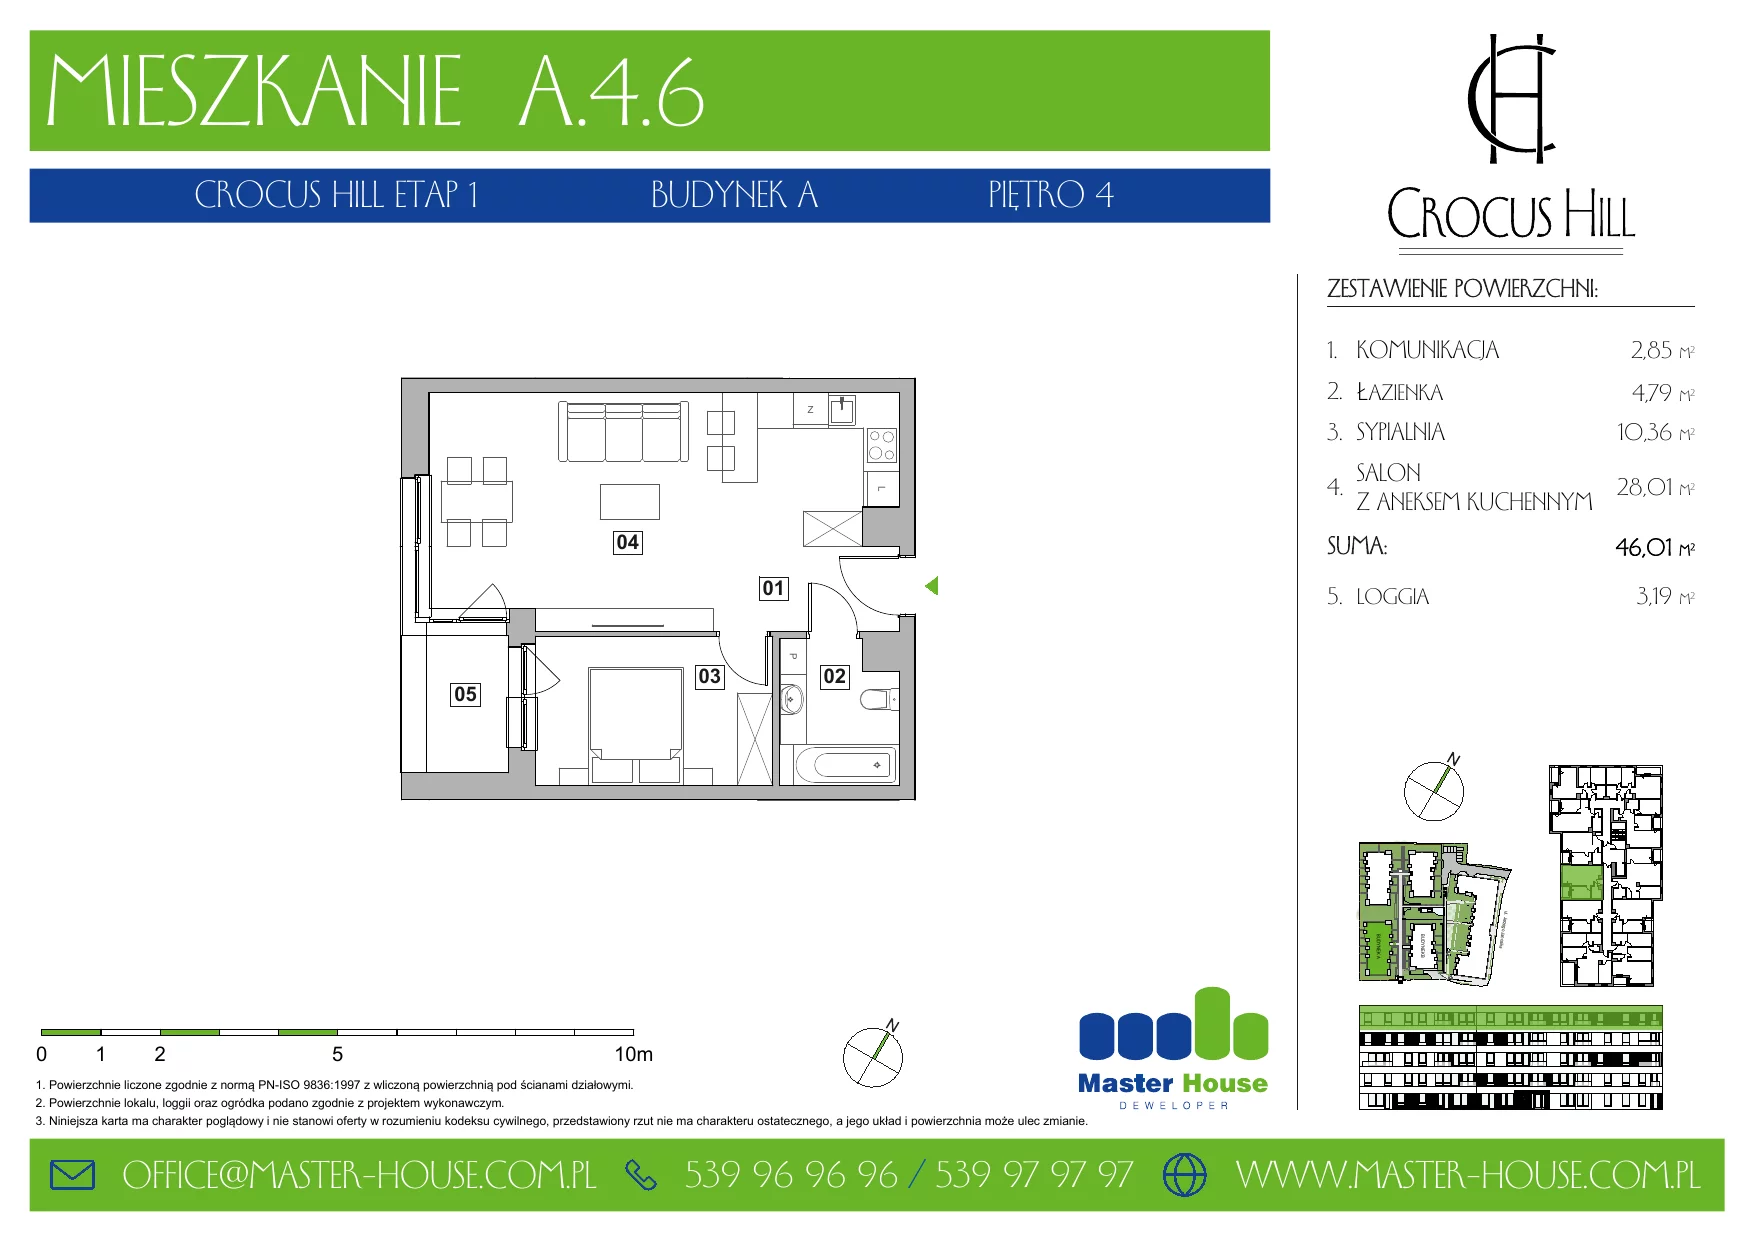 Mieszkanie 46,01 m², piętro 4, oferta nr A.4.6, Crocus Hill, Szczecin, Śródmieście, ul. Jerzego Janosika 2, 2A, 3, 3A